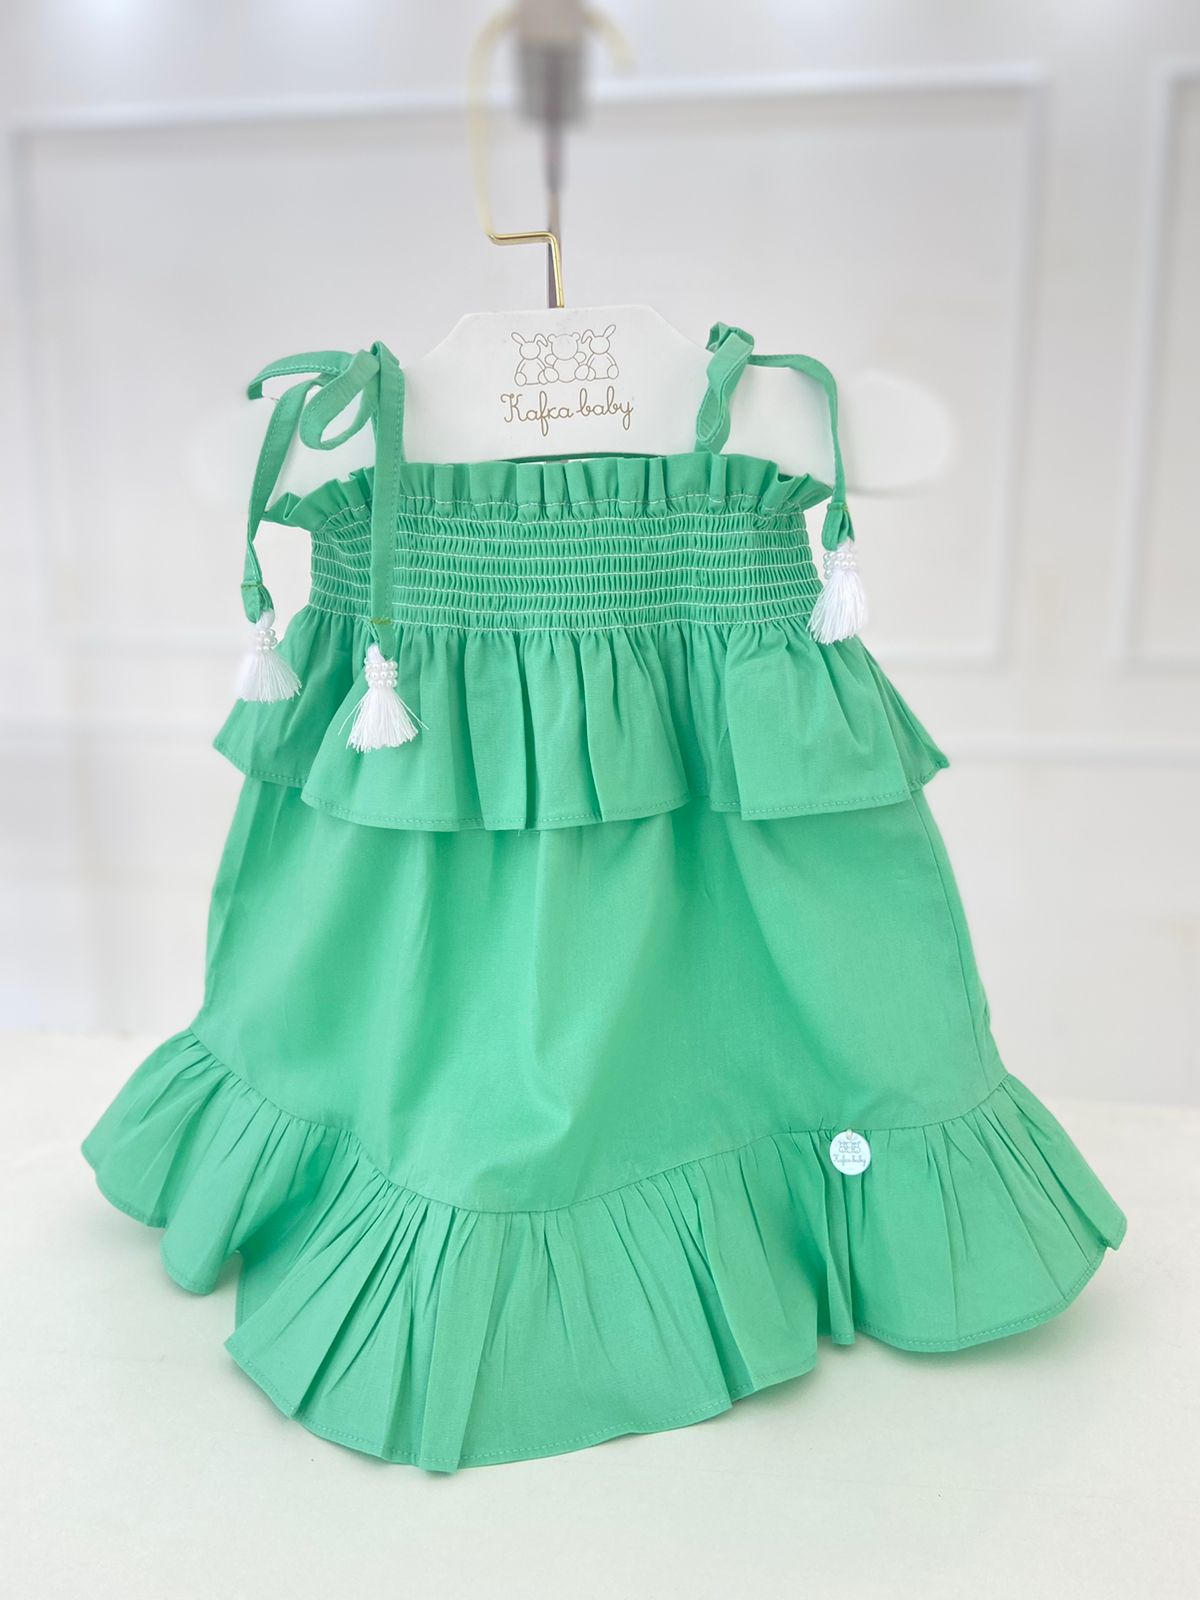 Kafka Baby Smocked Kelly Green Dress - Little Birdies